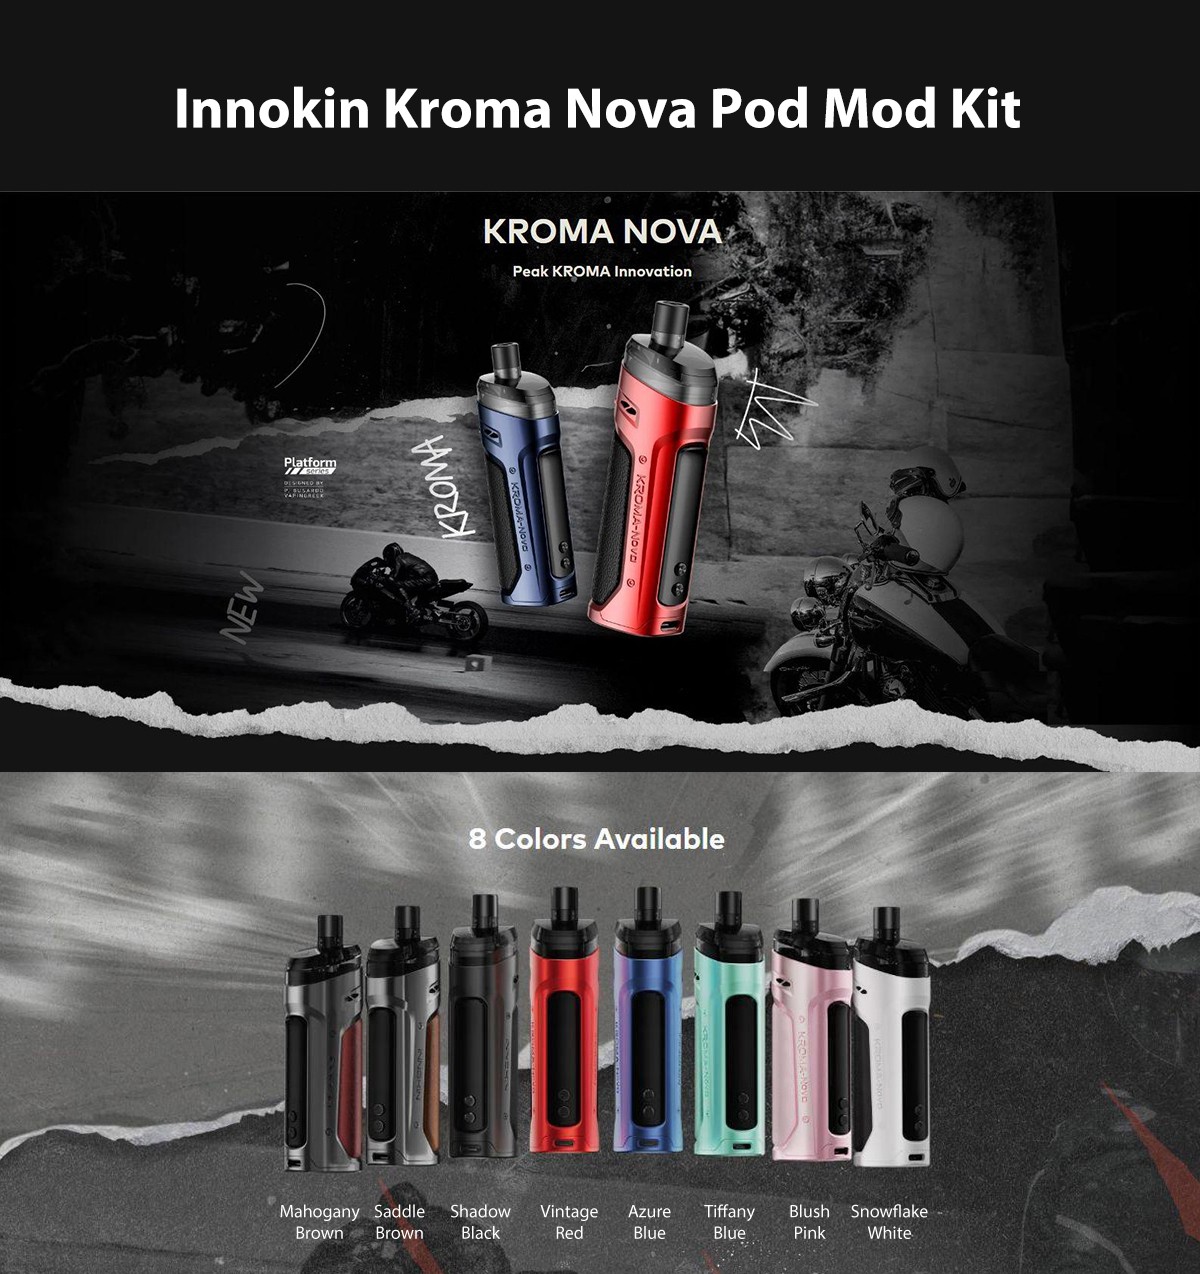 Innokin Kroma Nova Pod Mod Kit